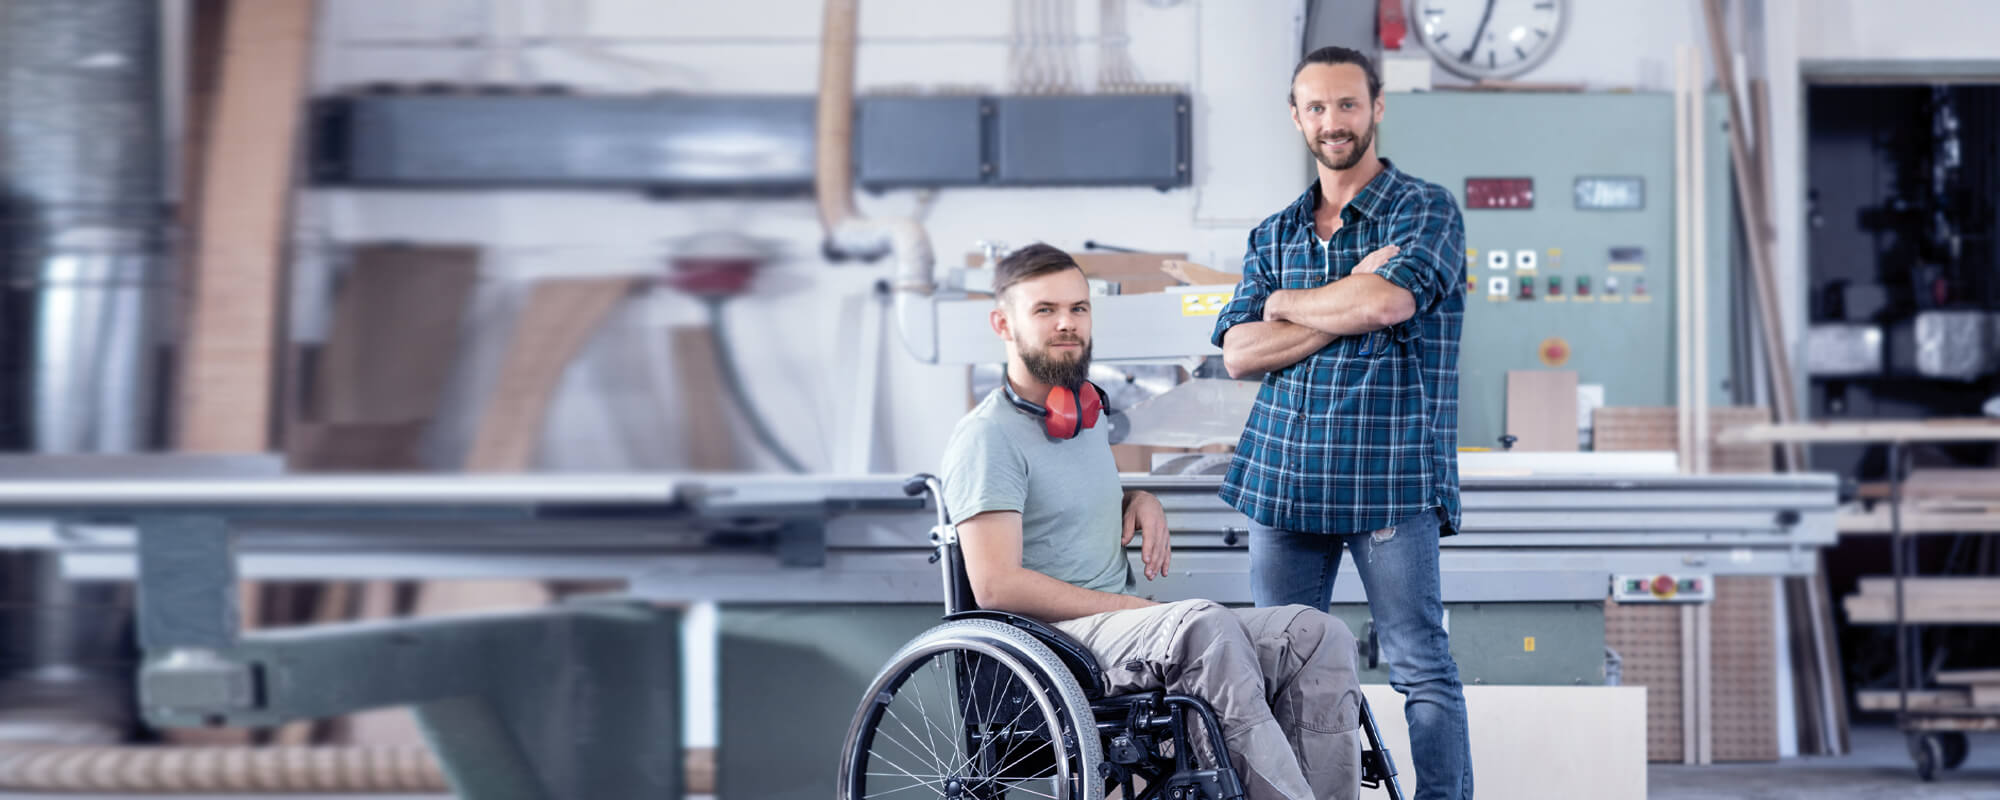 Behinderter Rollstuhlfahrer in einer Werkhalle mit seinem Kollegen.